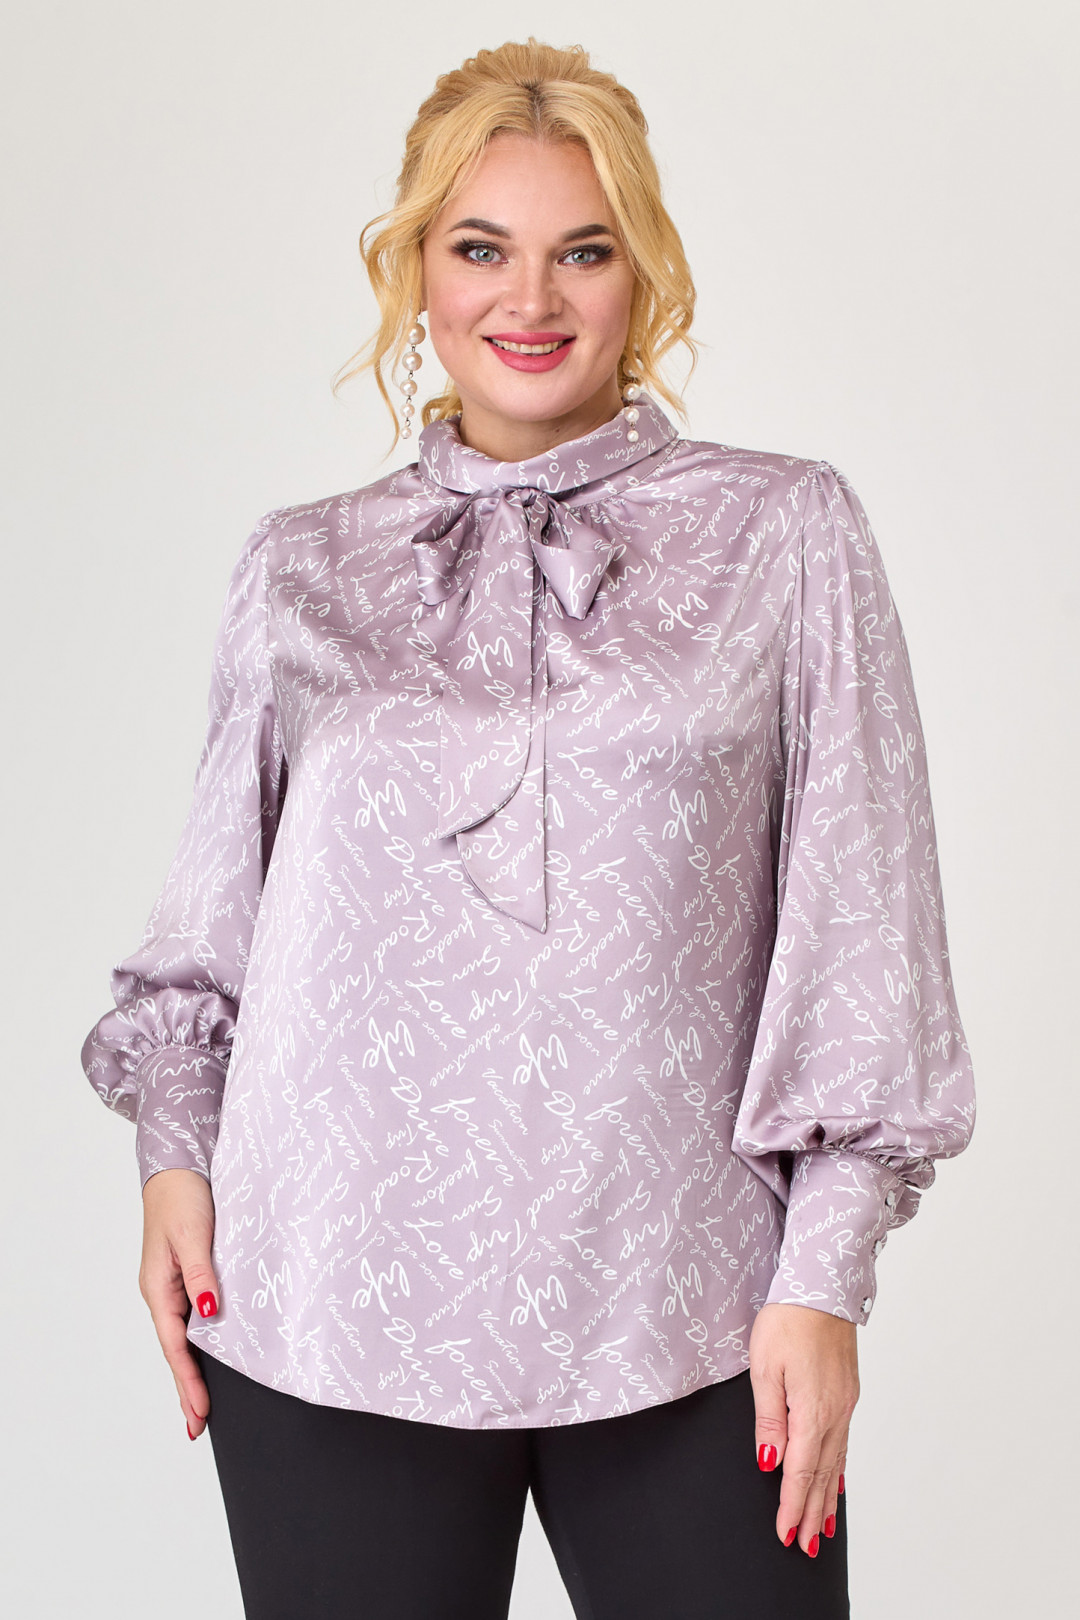 Блузка Светлана-Стиль 1734 розовый+буквы